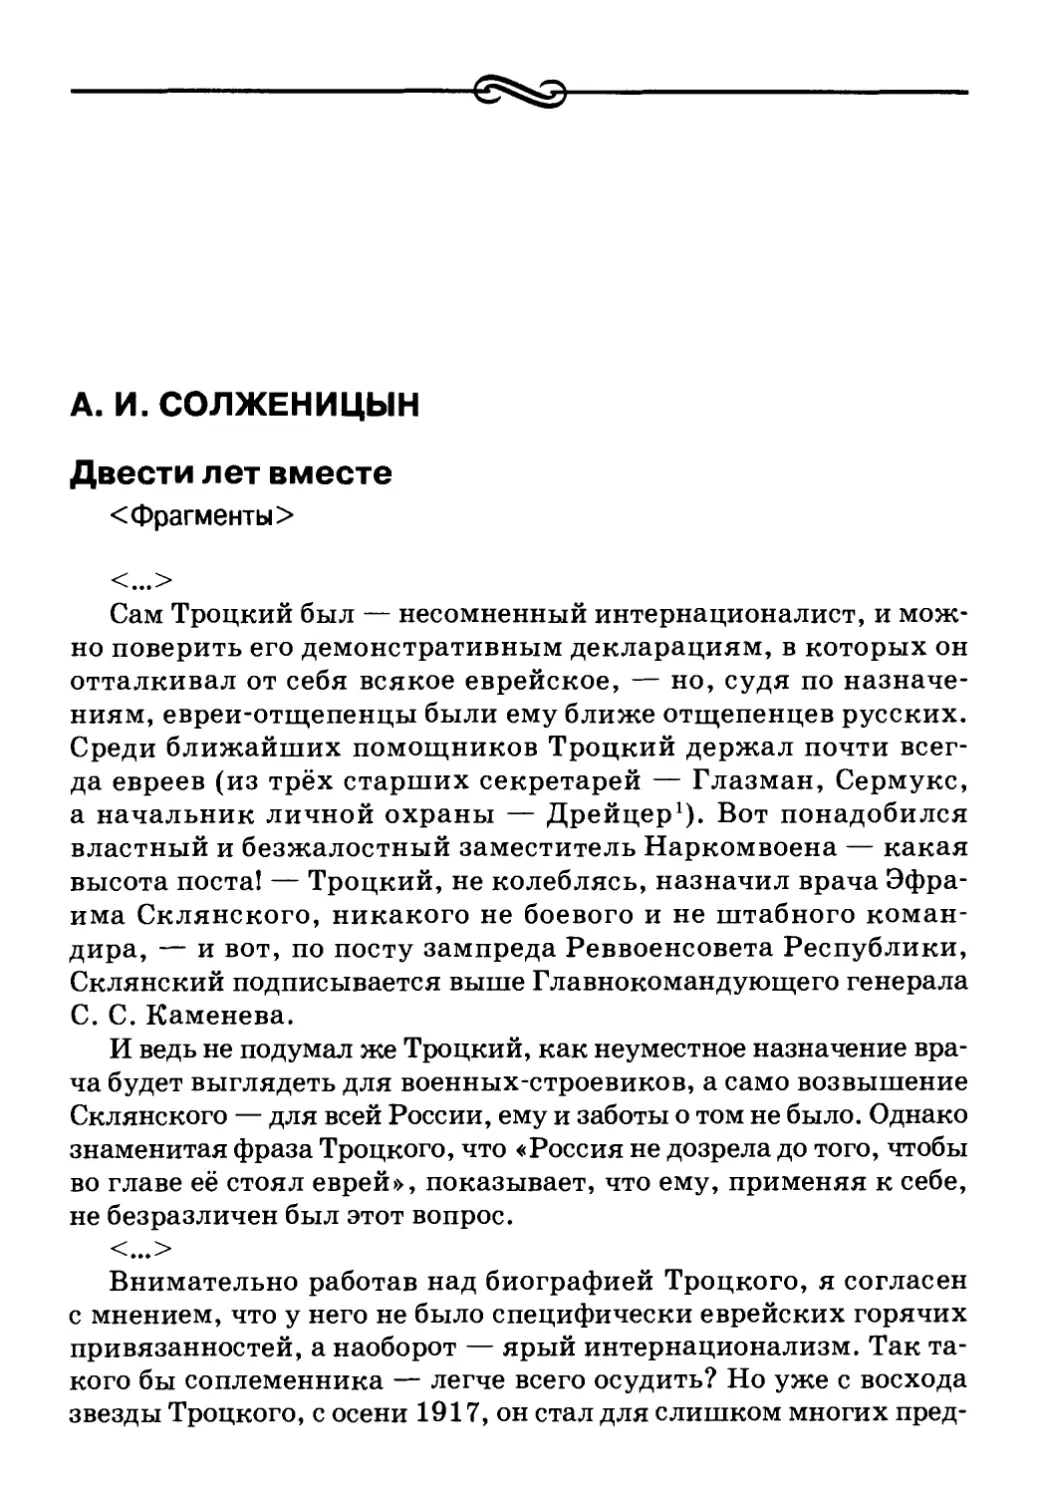 А. И. Солженицын. Двести лет вместе <Фрагменты>